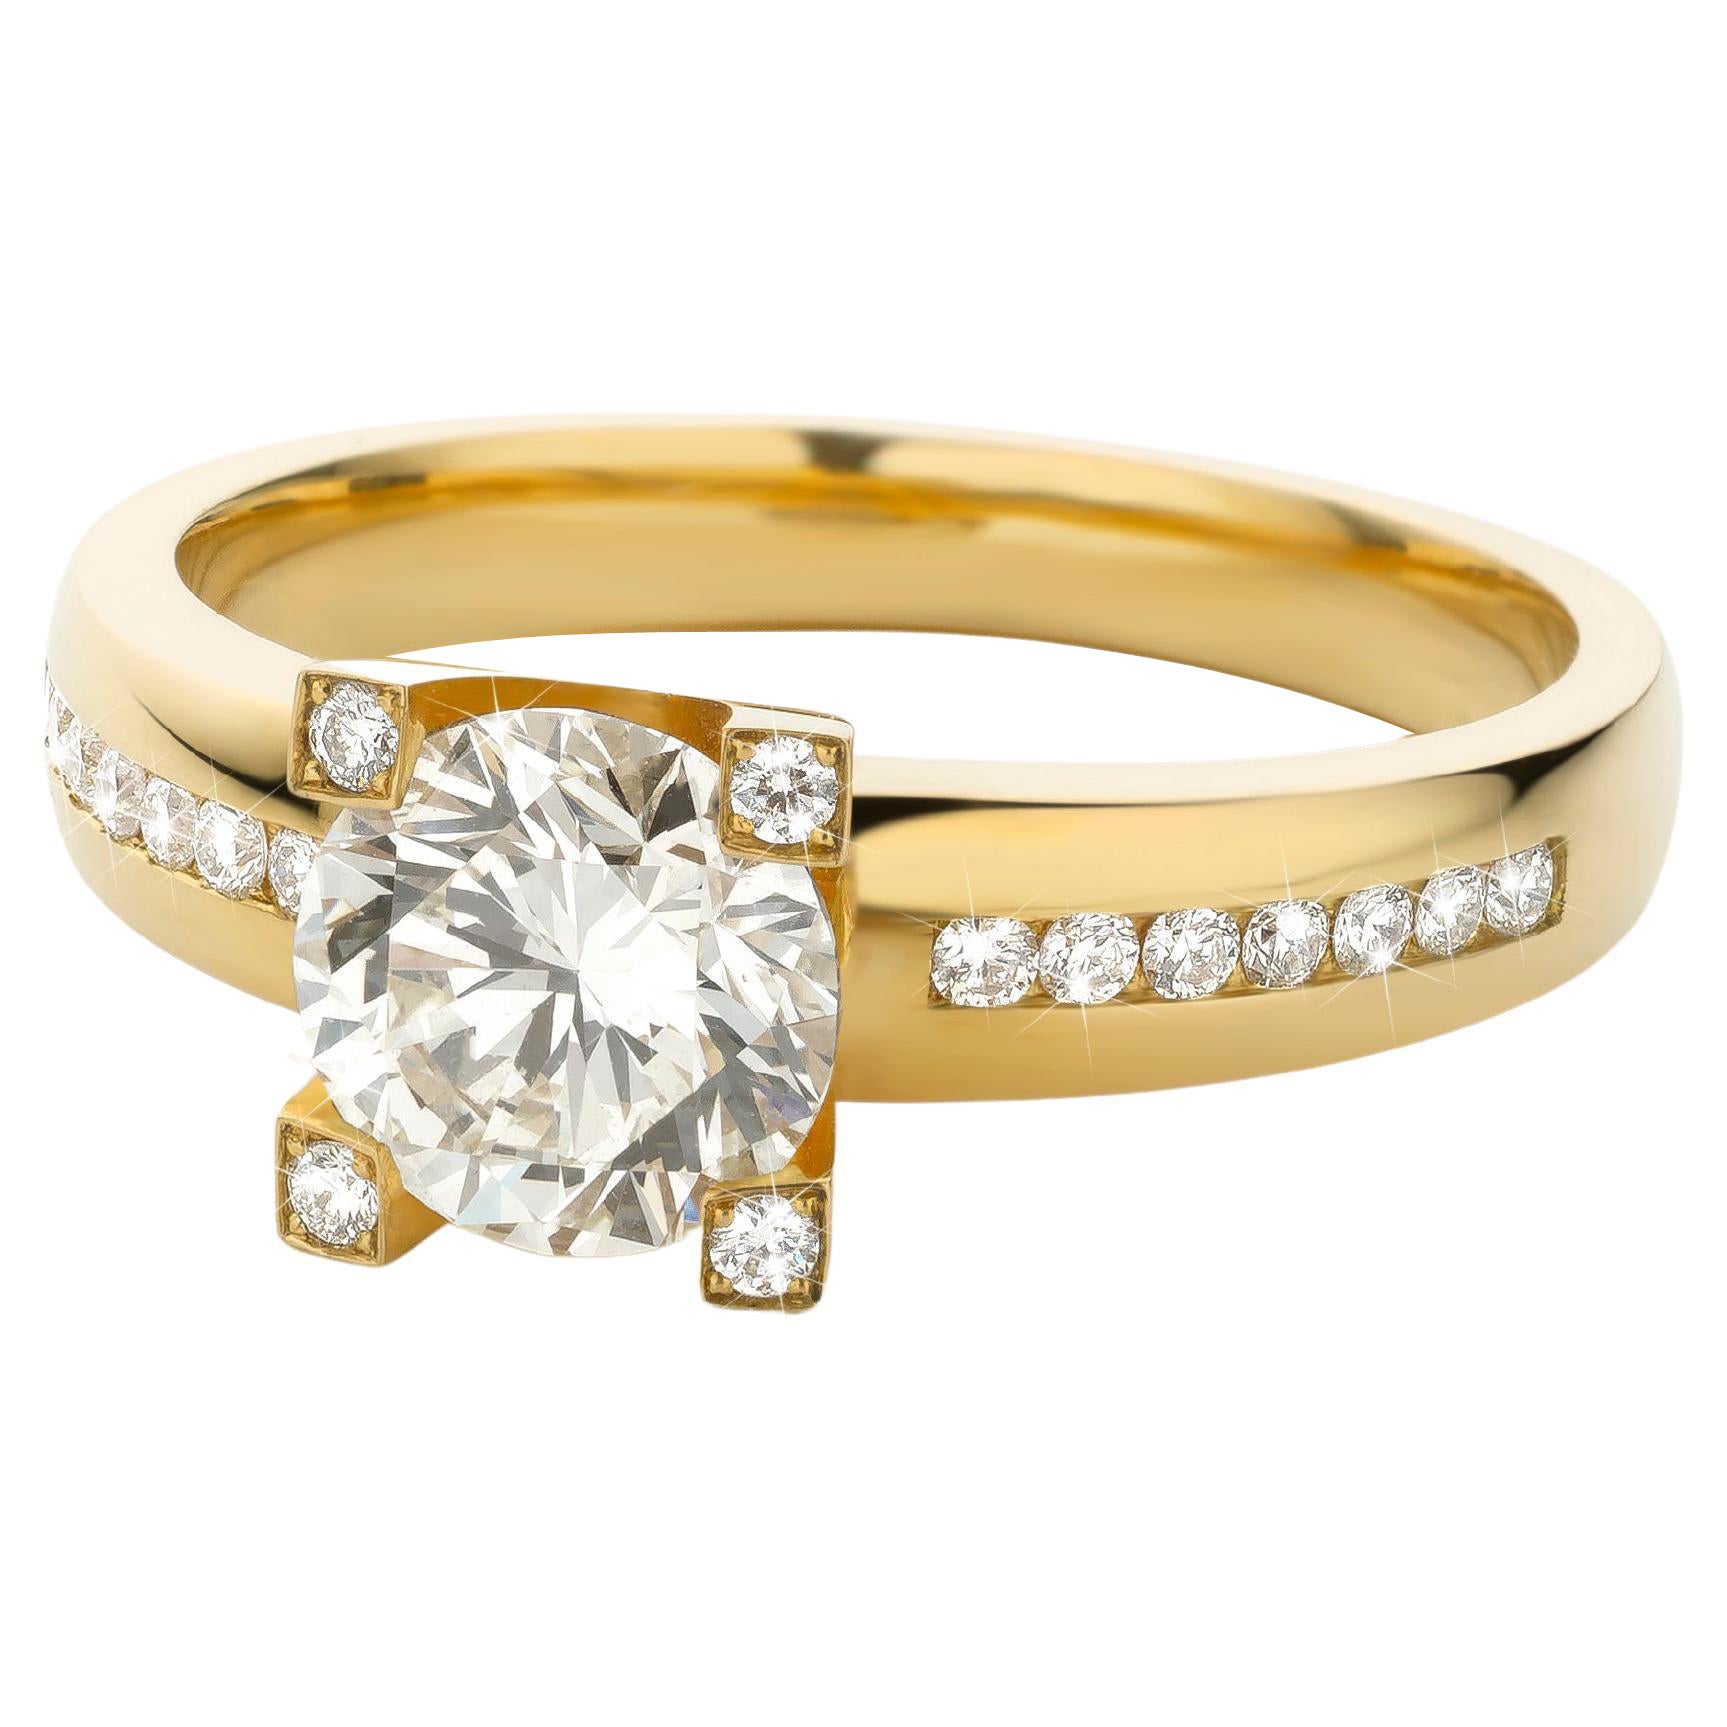 Cober “Big Solitair” 1.27 Carat Yellow Diamond & 18 Diamonds Yellow Gold Ring  For Sale